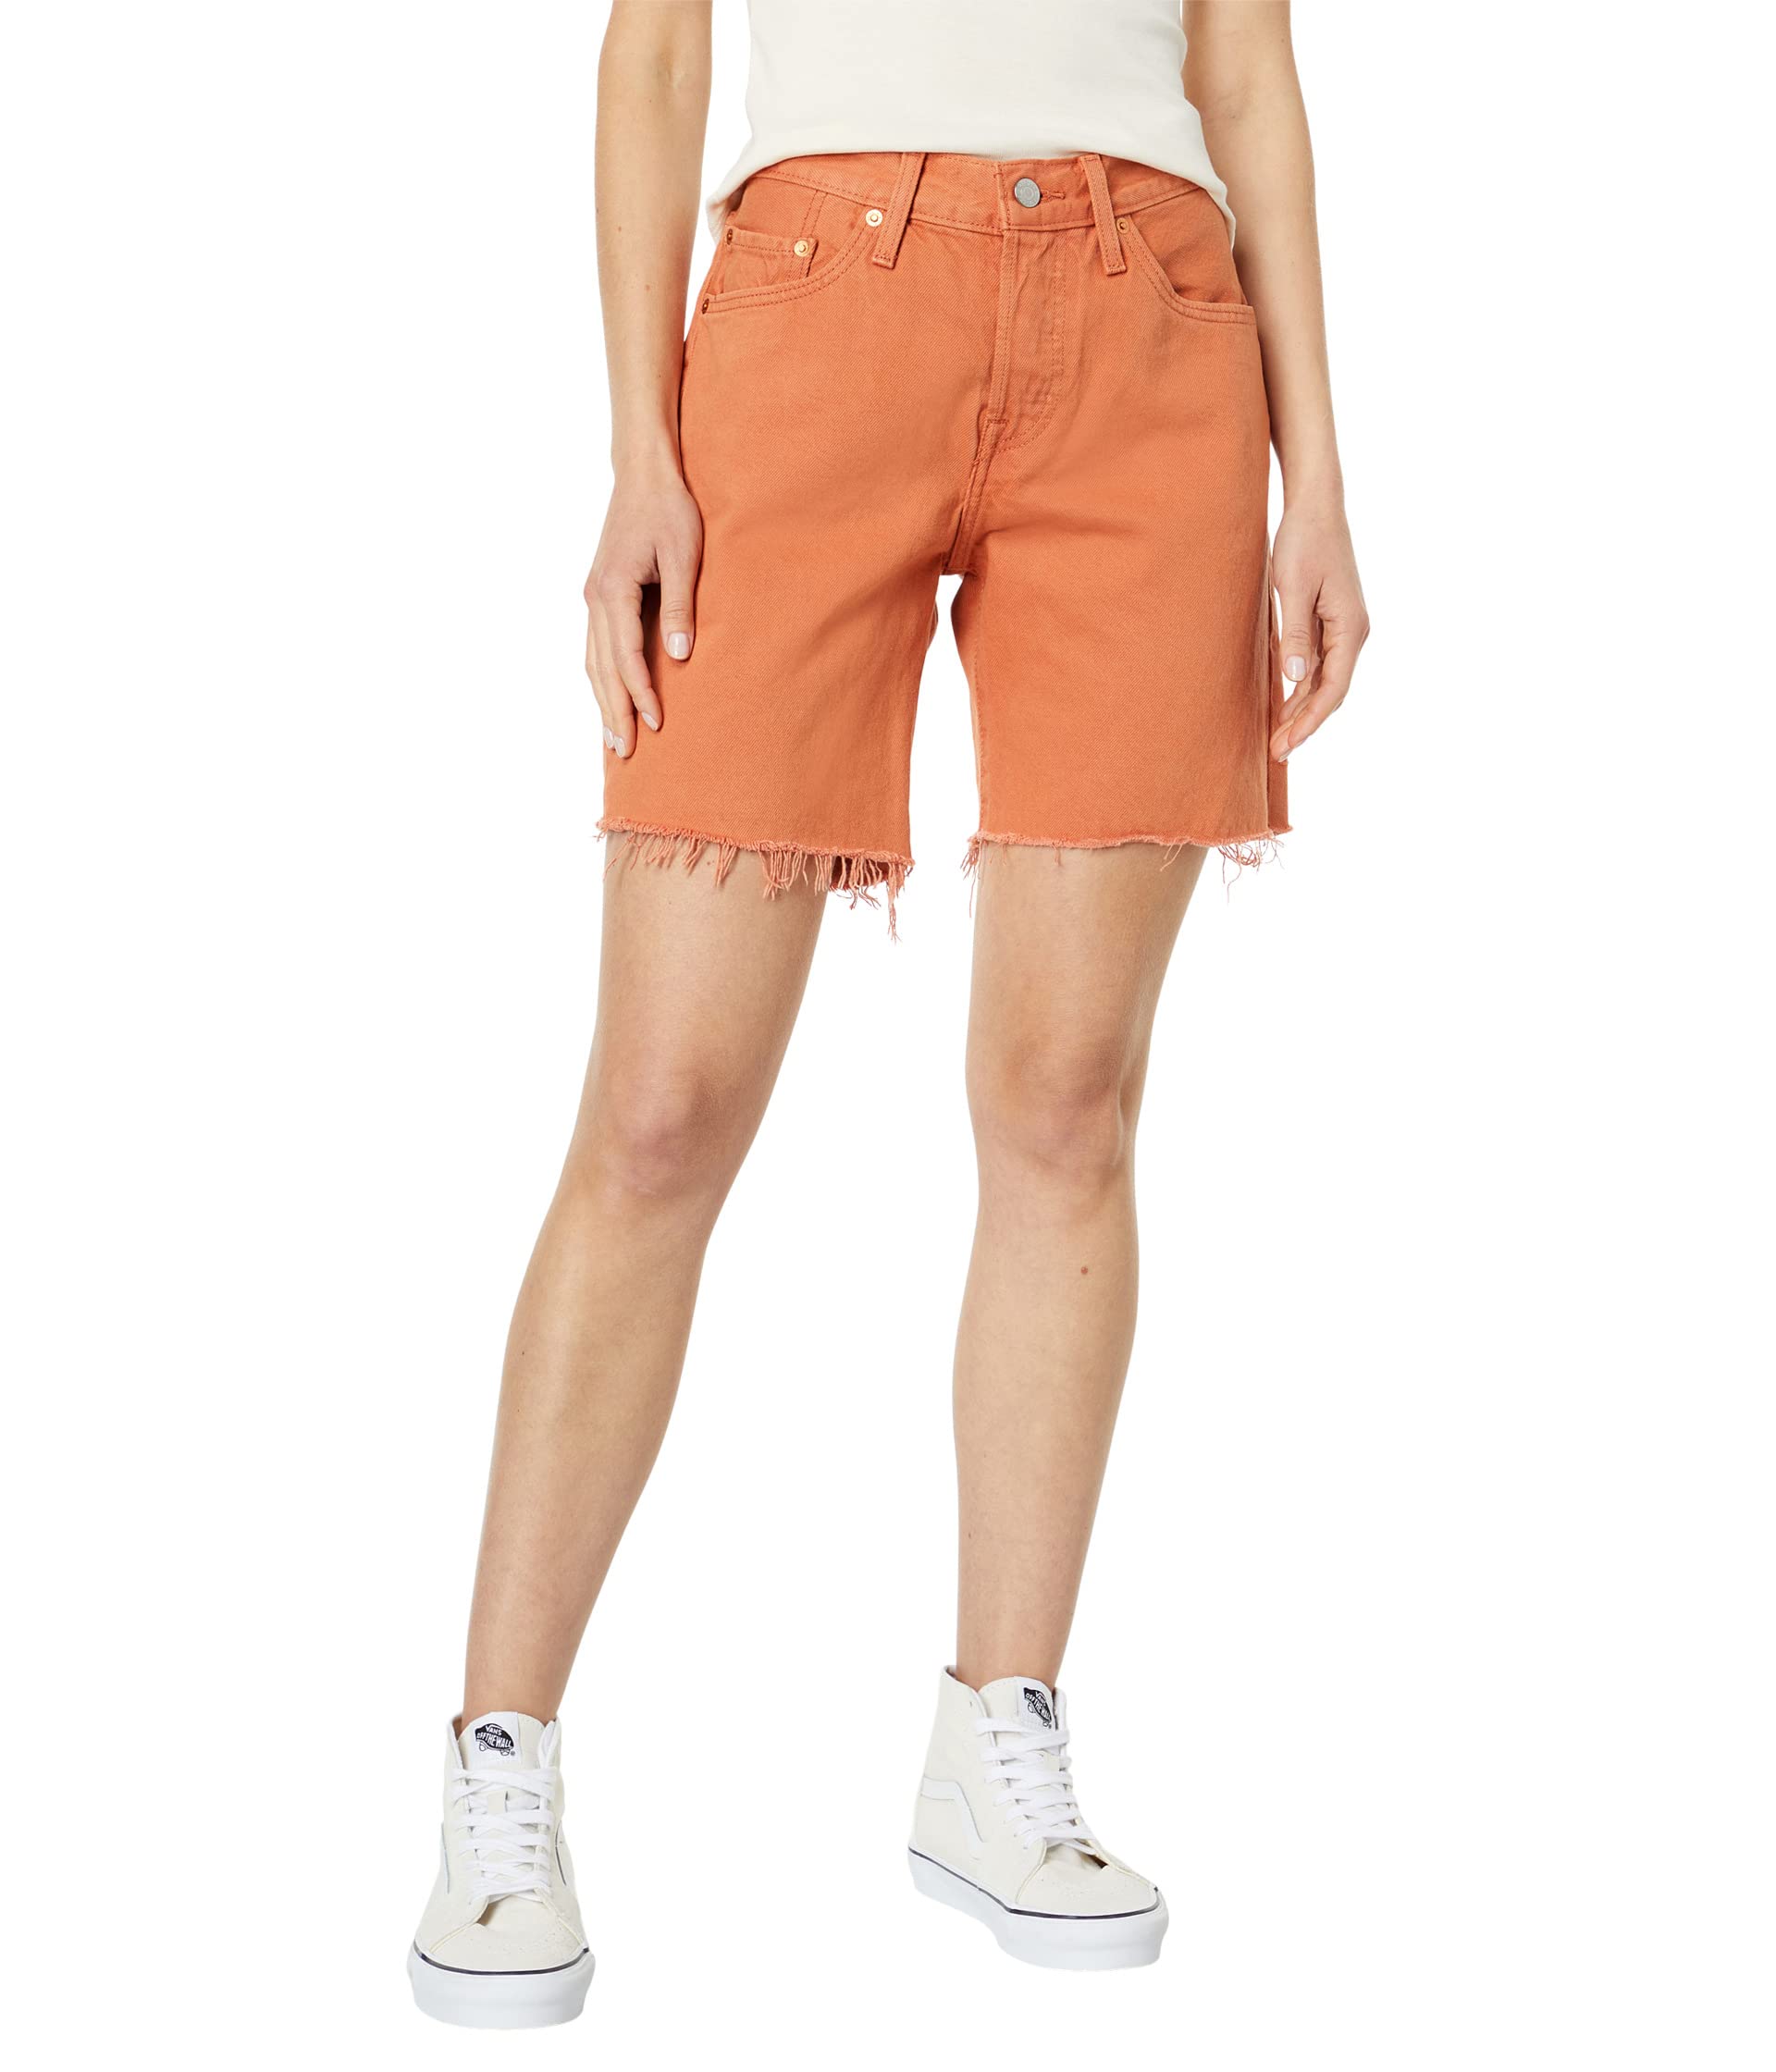 Шорты Levi's Premium, 90s 501 Shorts шорты levi s premium 501 93 shorts цвет paint by numbers